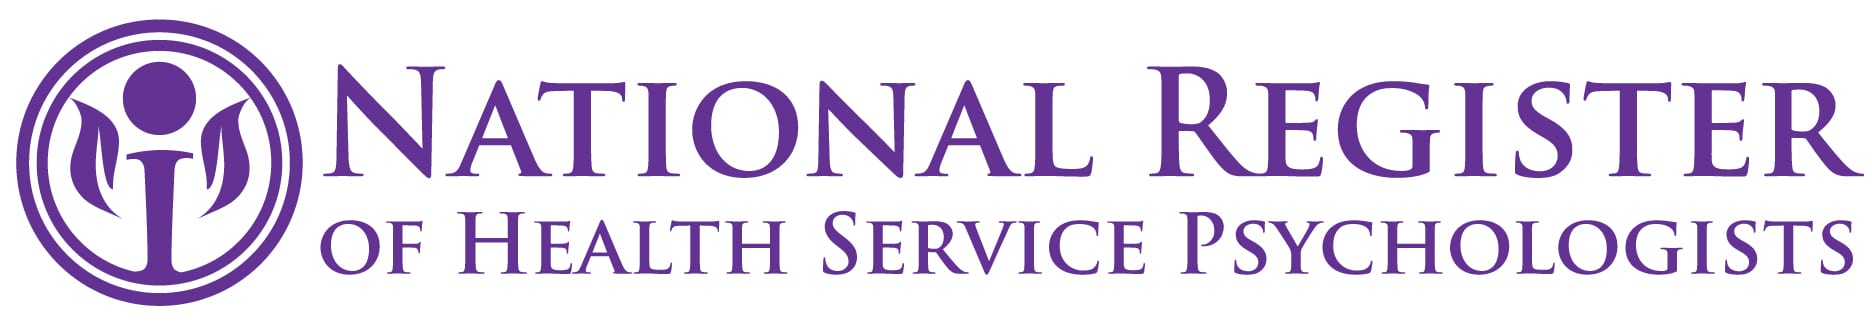 National Register logo